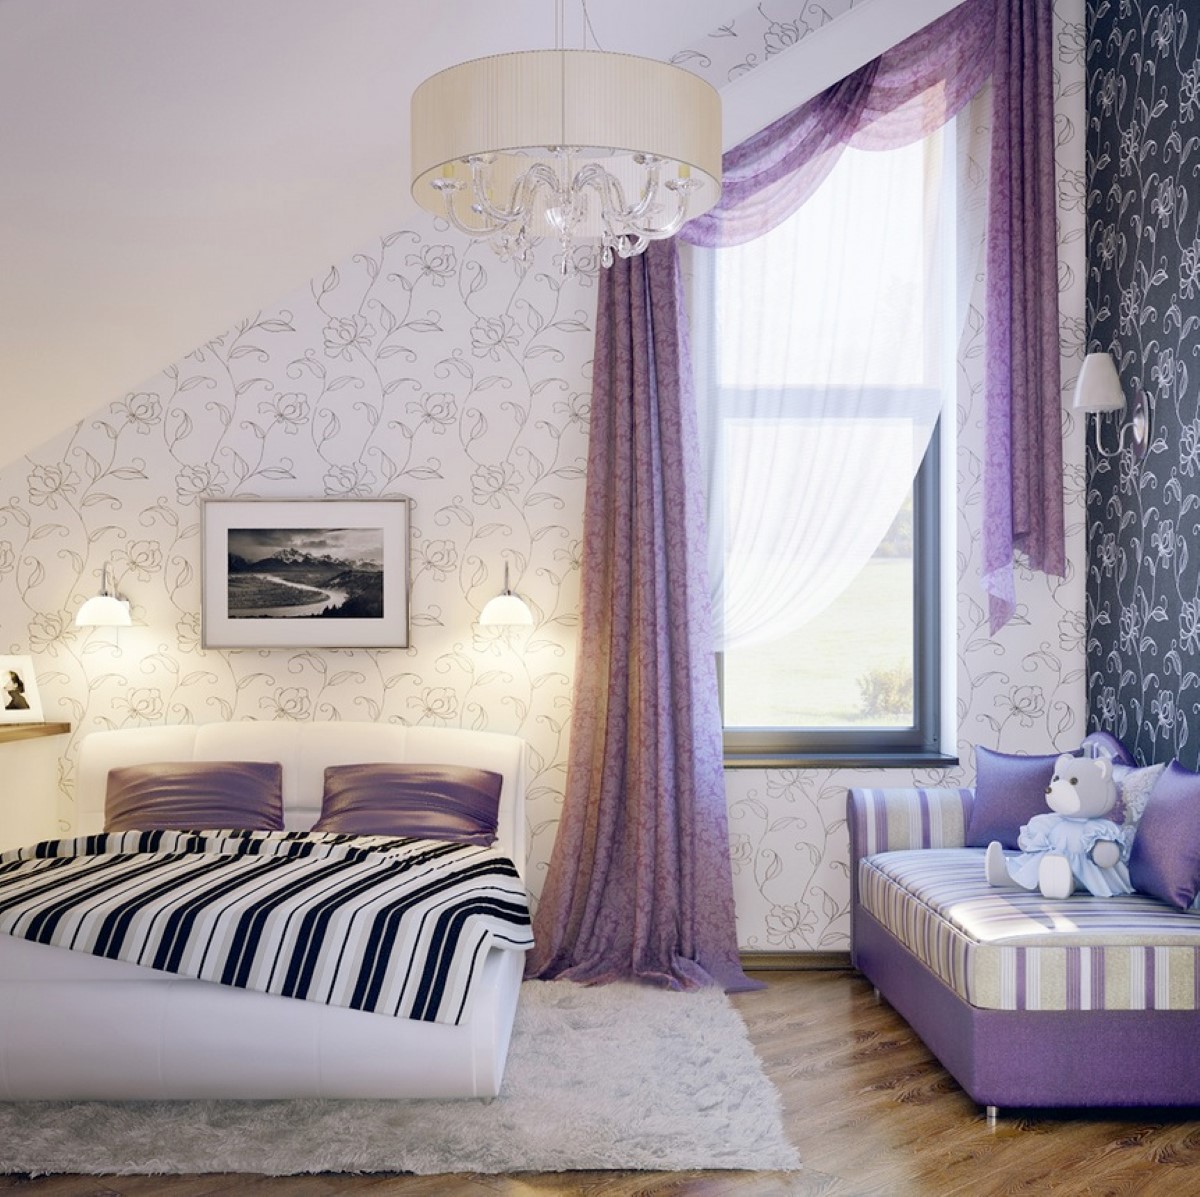 Дизайн комнате красиво фото. Спальня в сиреневых тонах. Спальня в фиолетовом цвете. Спальня в фиолетовых тонах. Спальня в лавандовых оттенках.